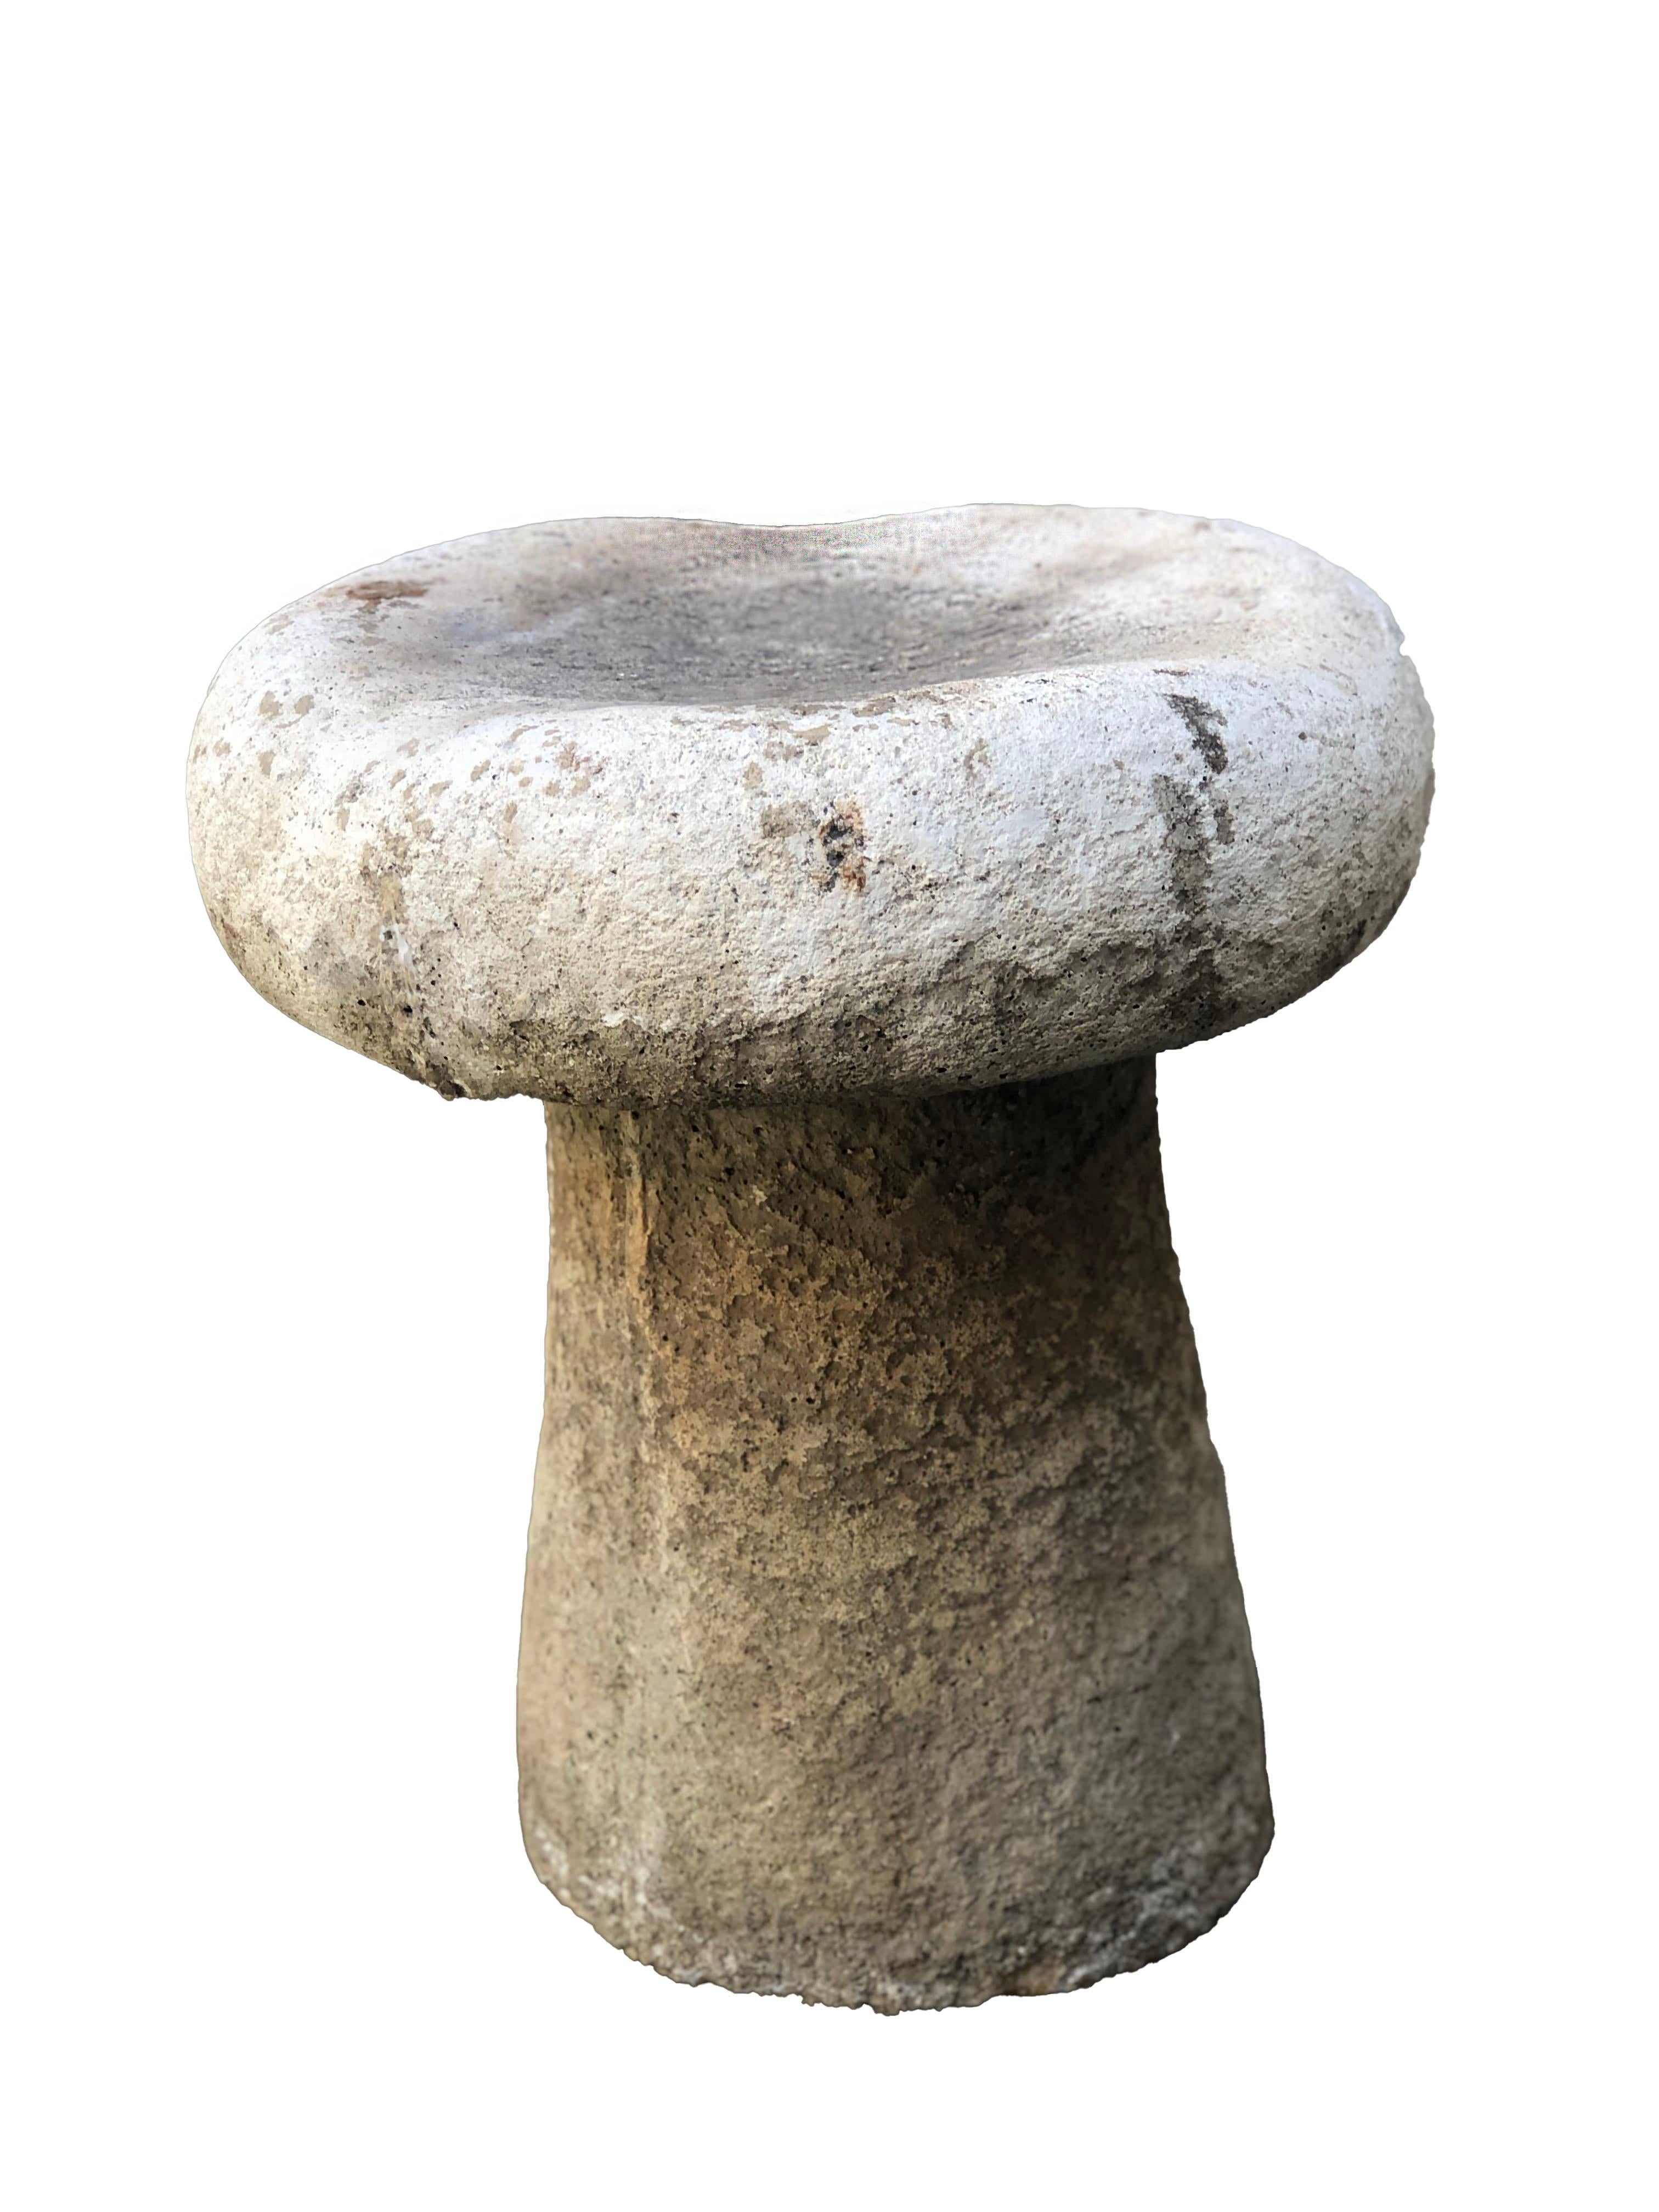 Rustic Vintage Cement Mushroom Garden Stool